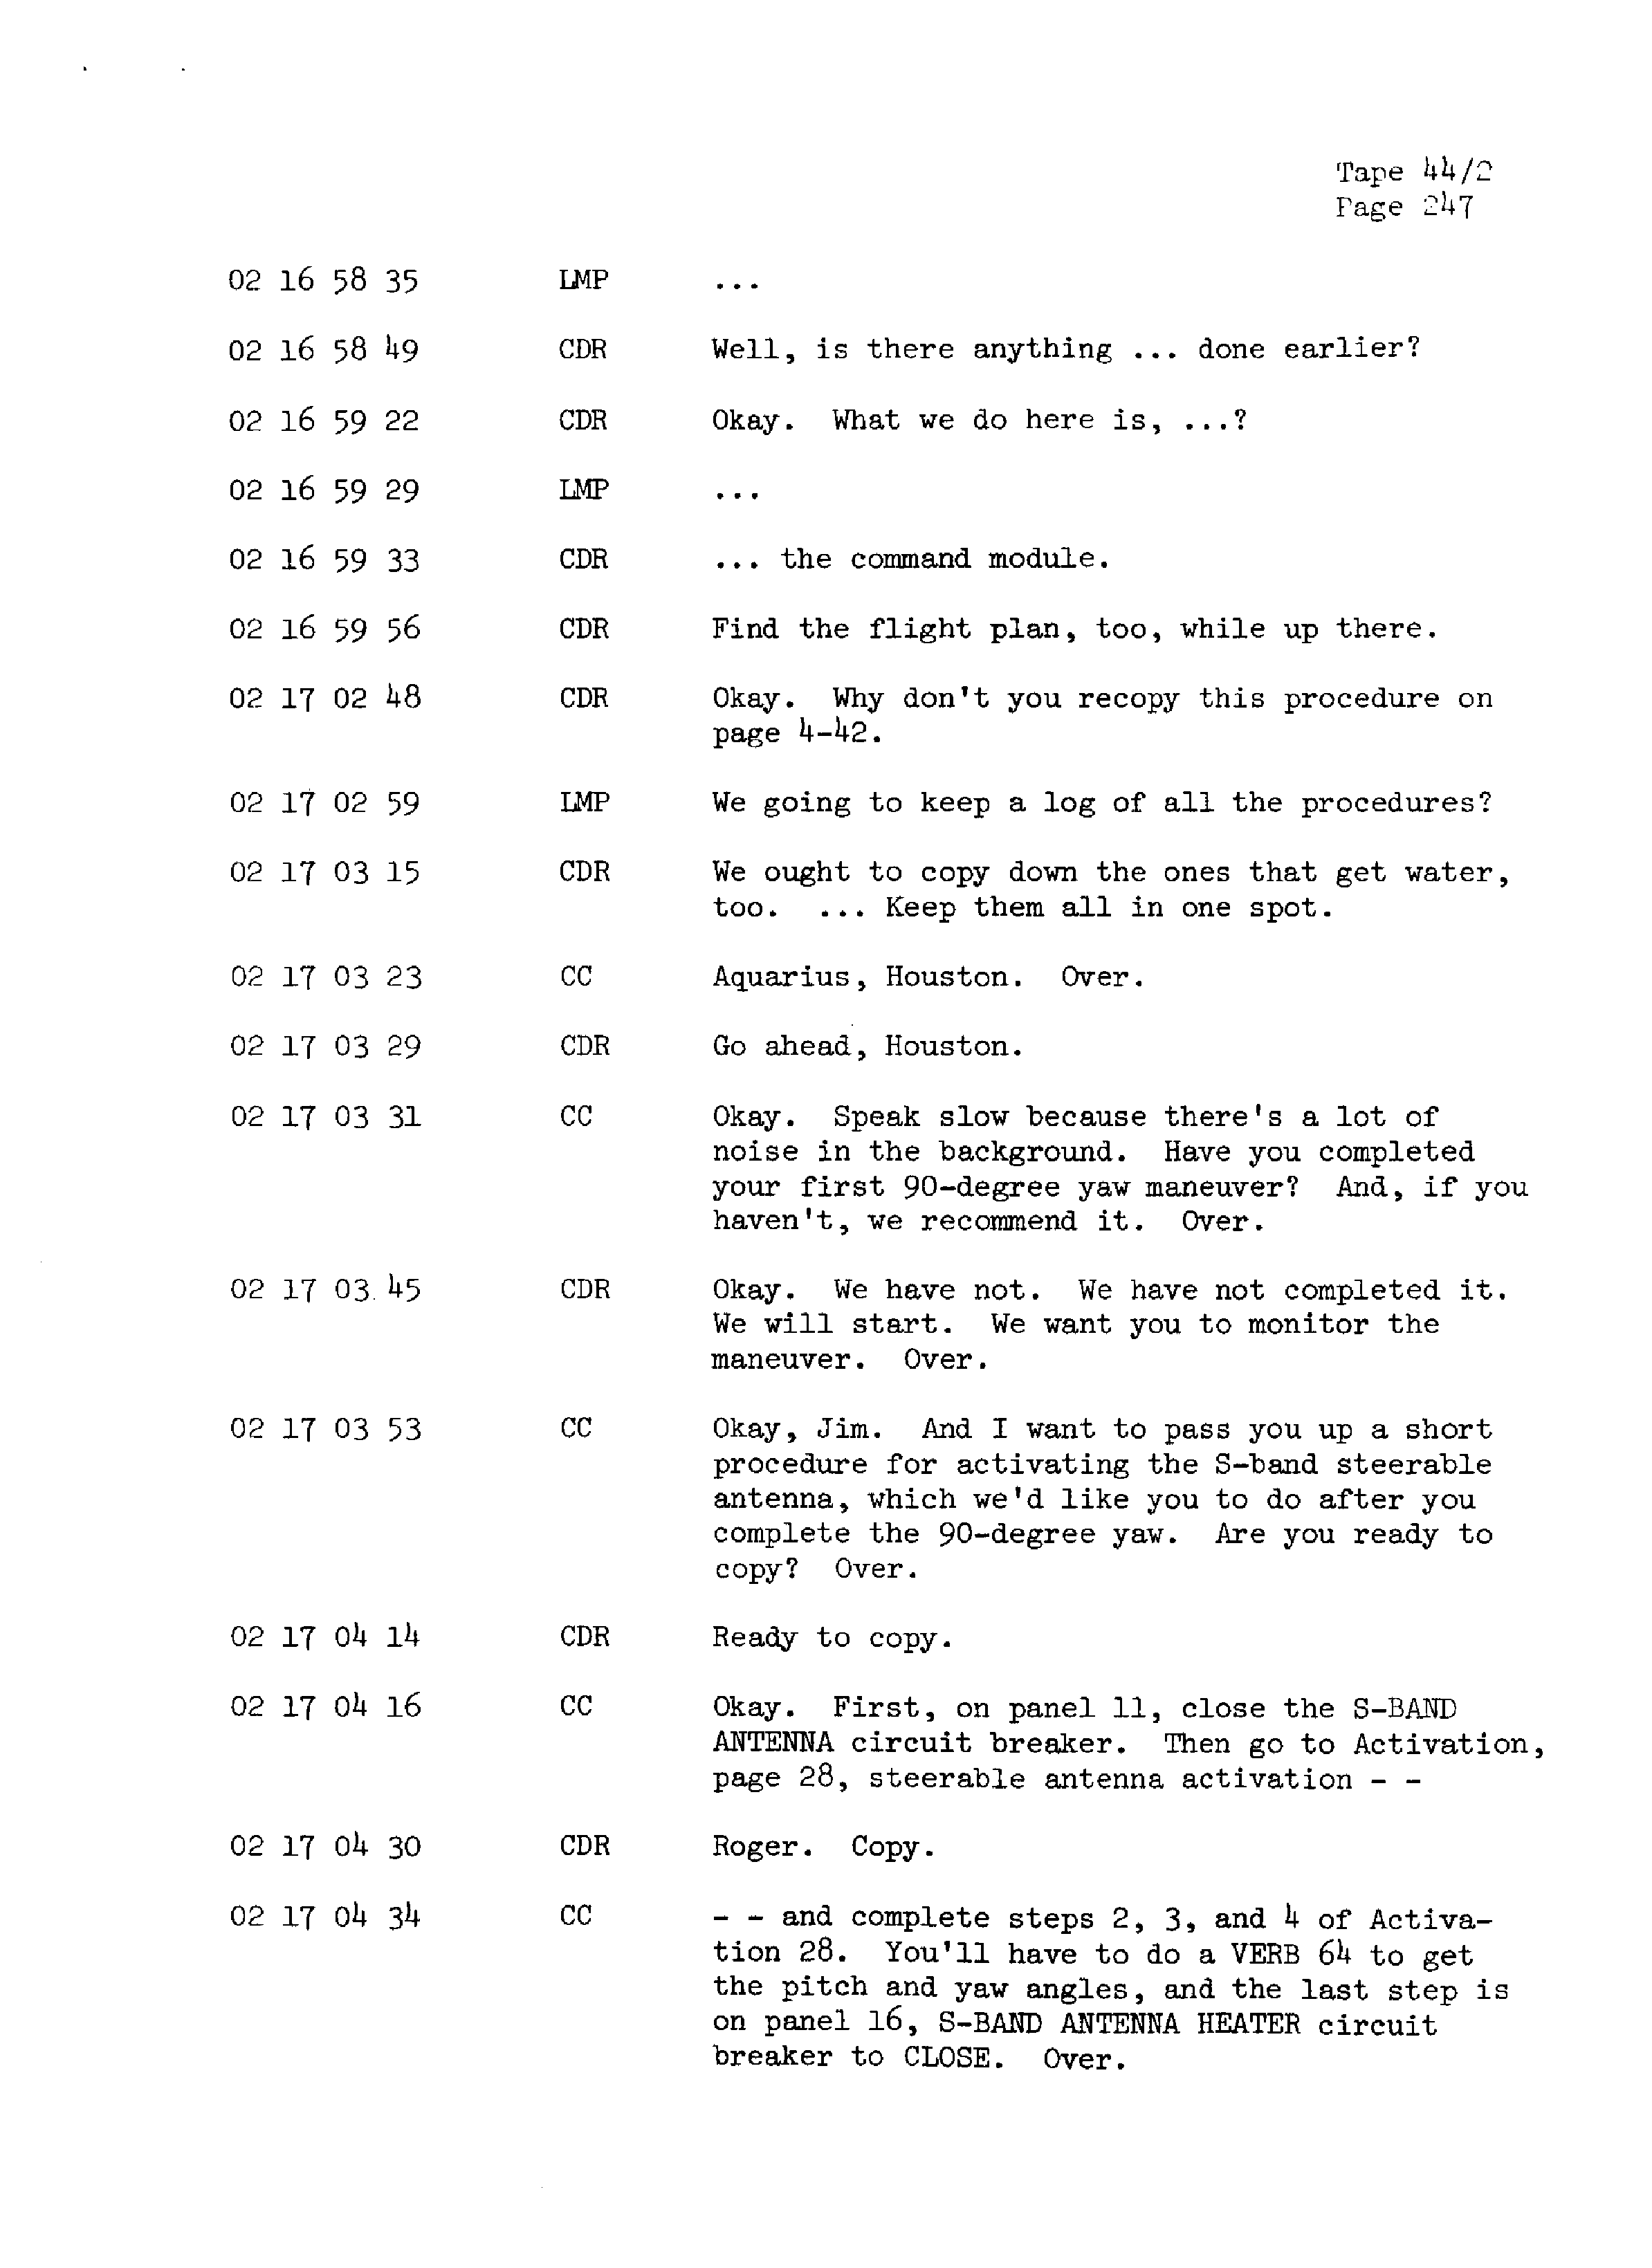 Page 254 of Apollo 13’s original transcript